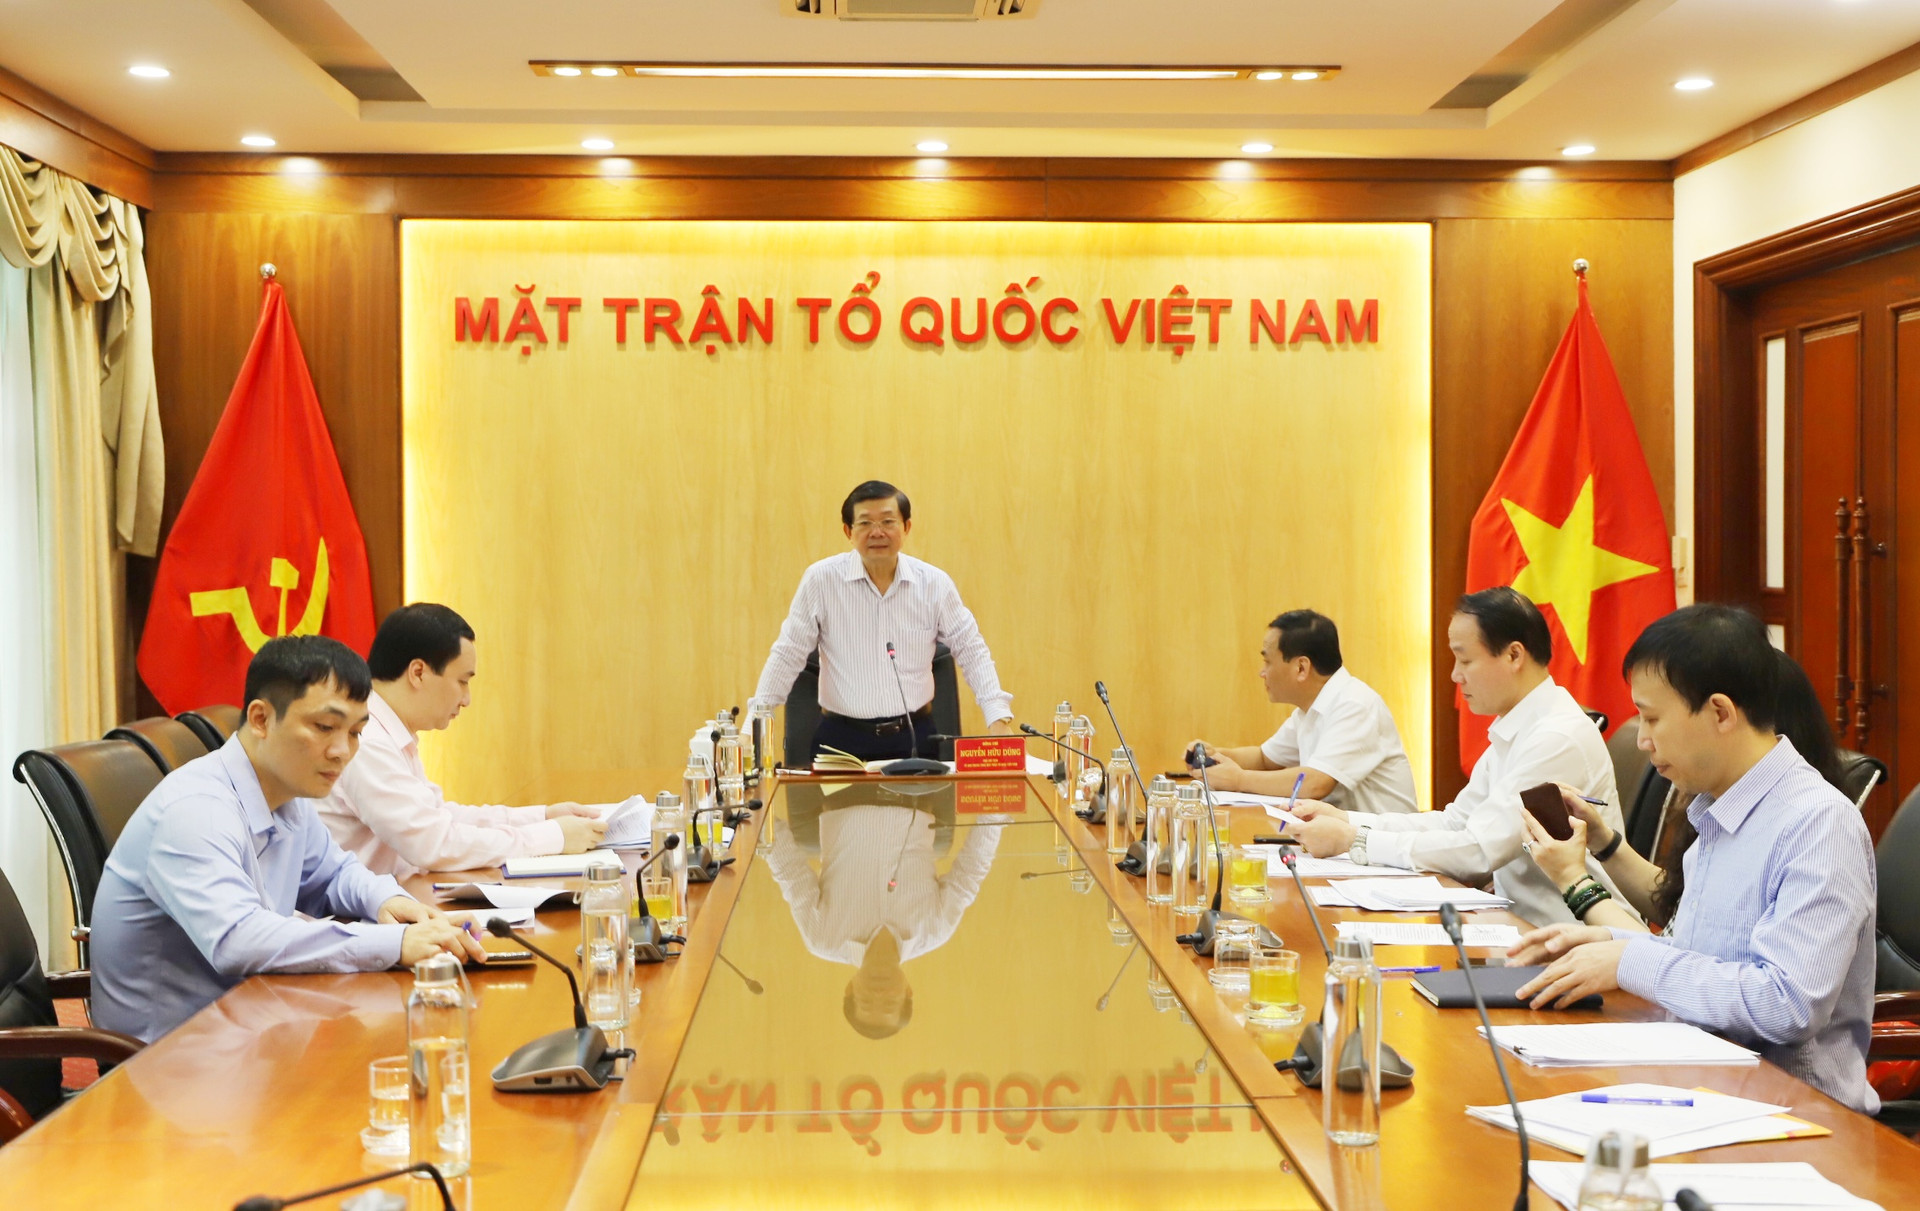 Phó Chủ tịch Nguyễn Hữu Dũng phát biểu tại hội nghị.